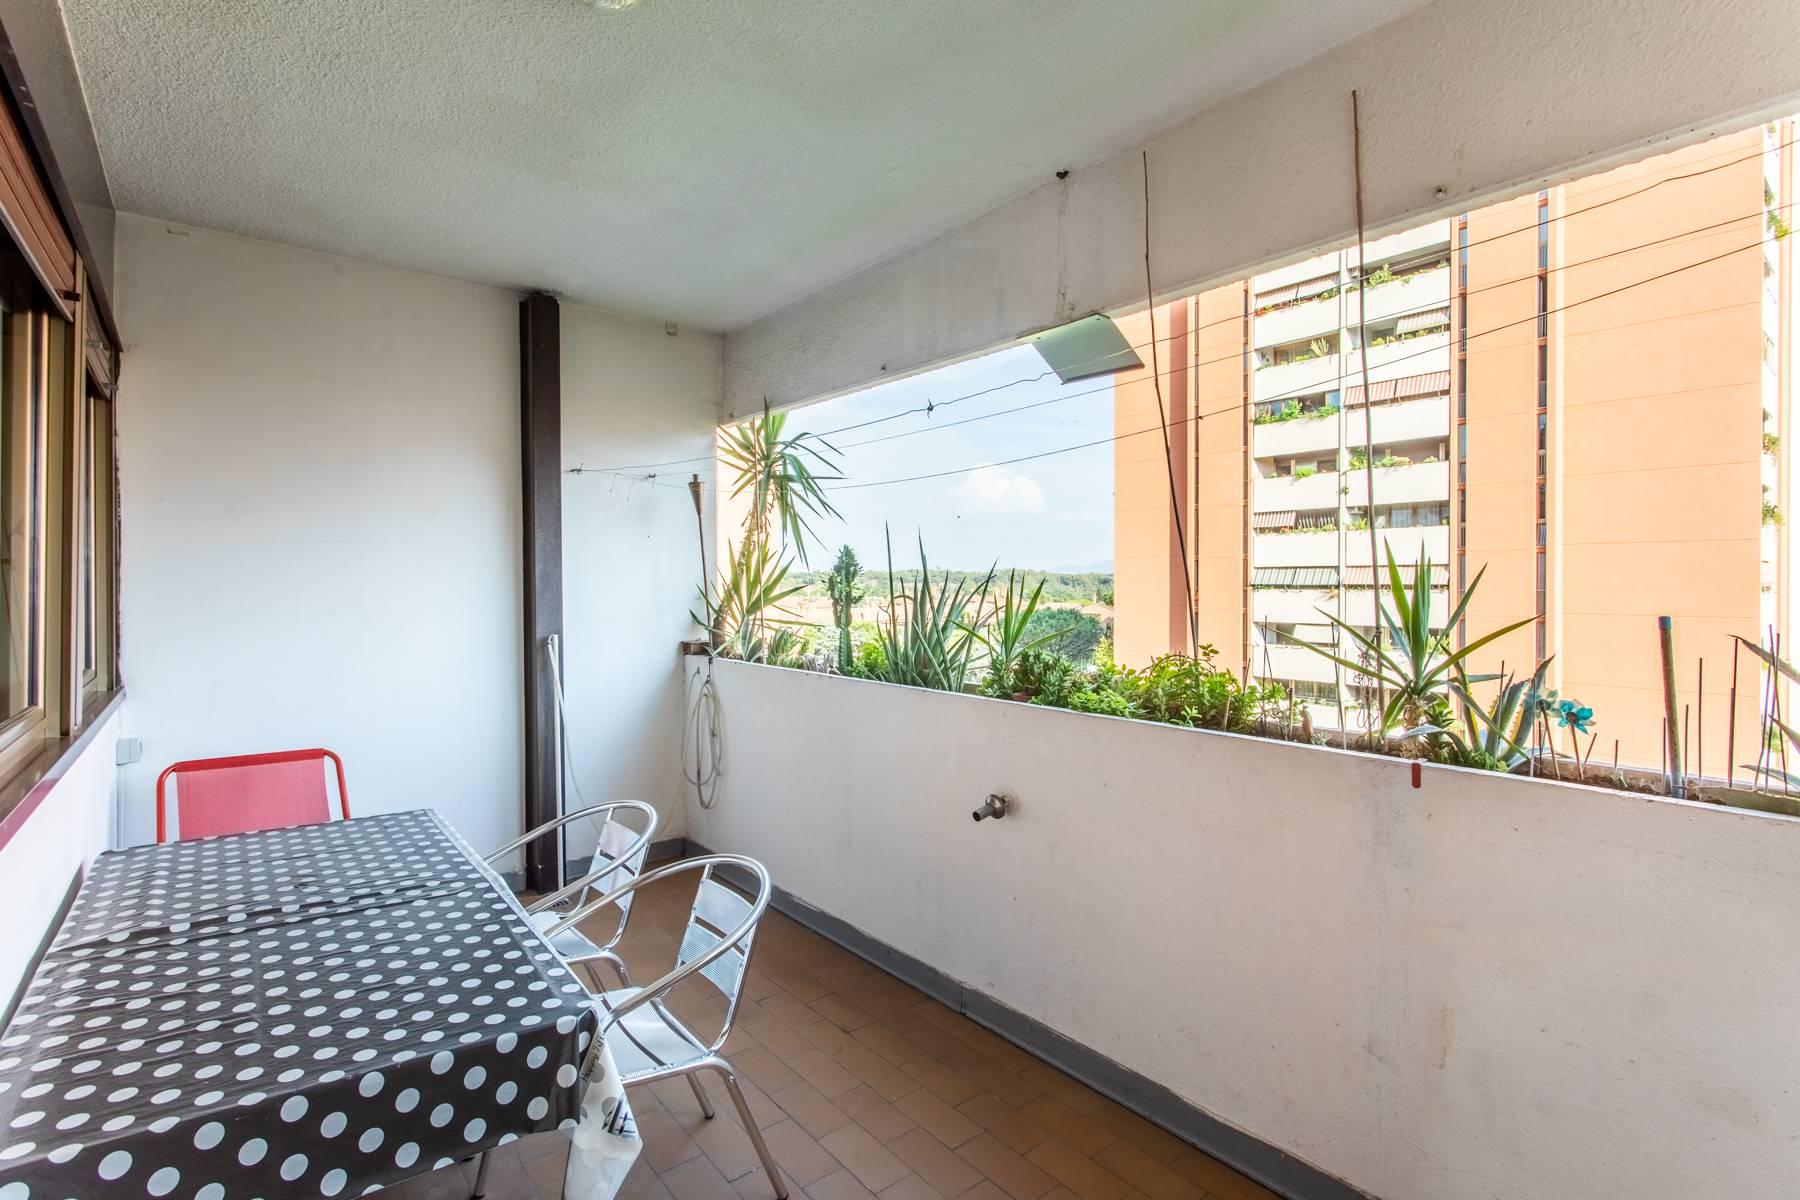 Luminoso appartamento con terrazzo esclusivo e piscina condominiale - 4